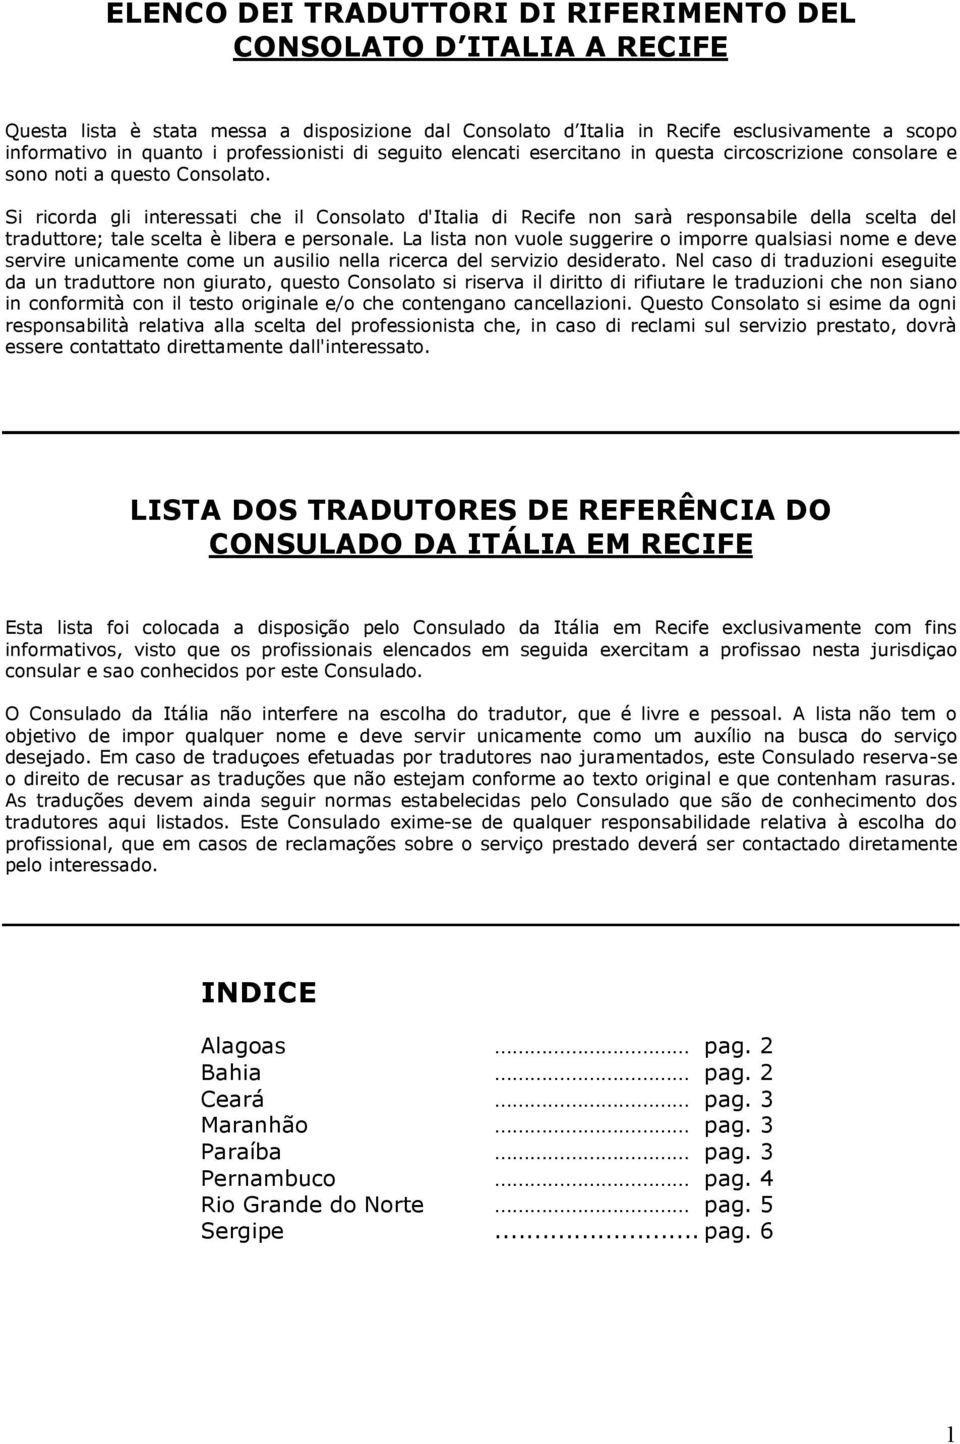 Si ricorda gli interessati che il Consolato d'italia di Recife non sarà responsabile della scelta del traduttore; tale scelta è libera e personale.